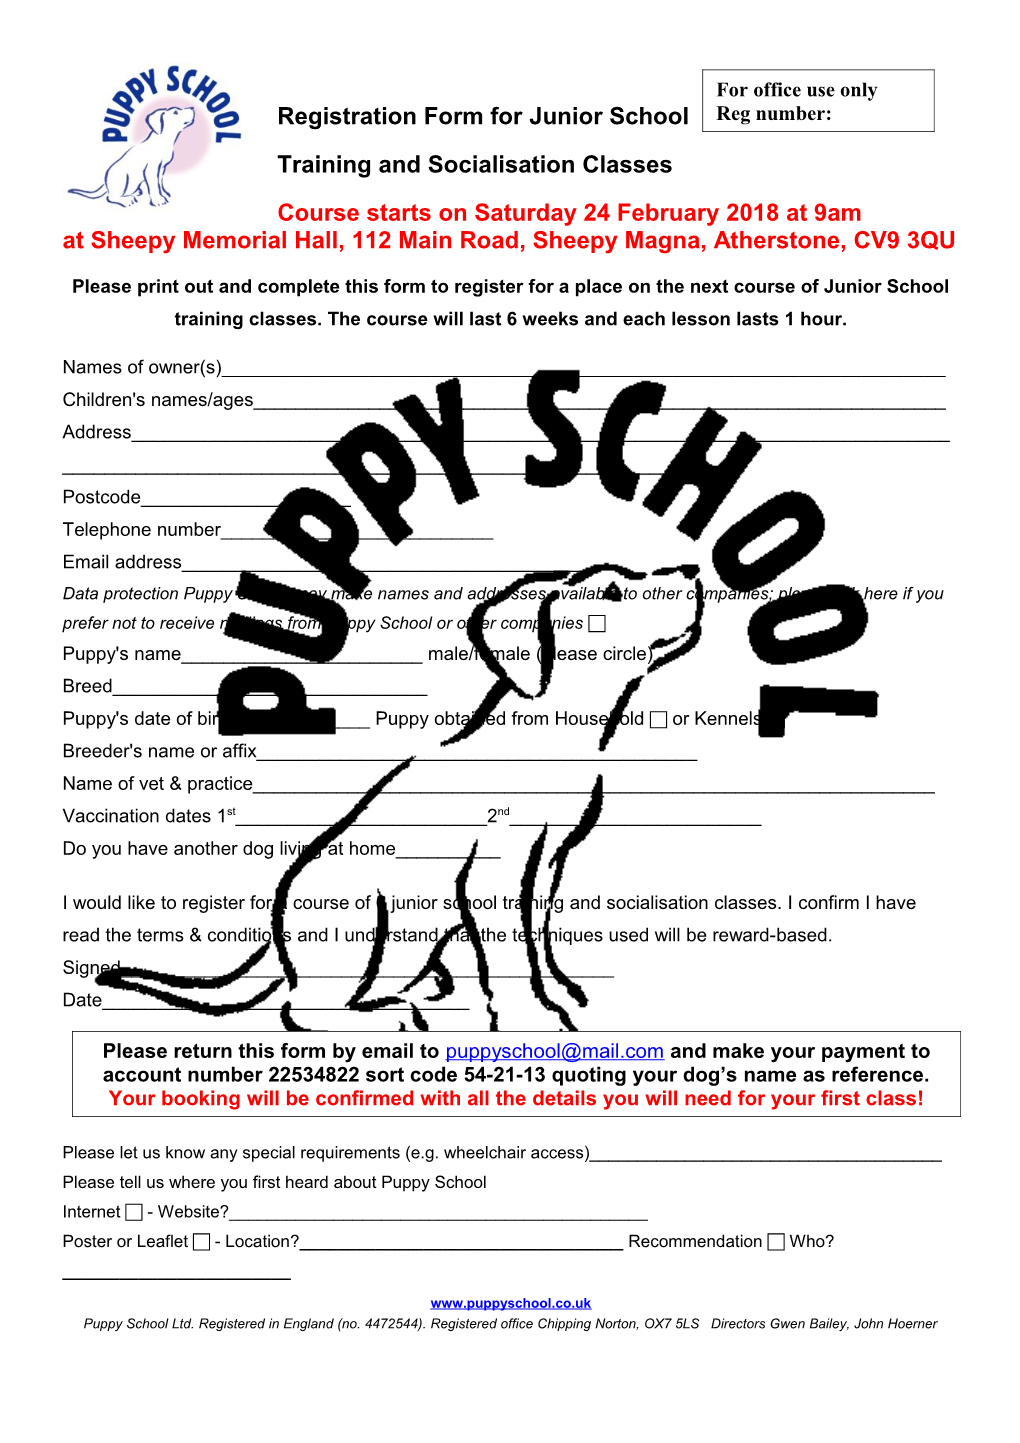 Registration Form for Junior School